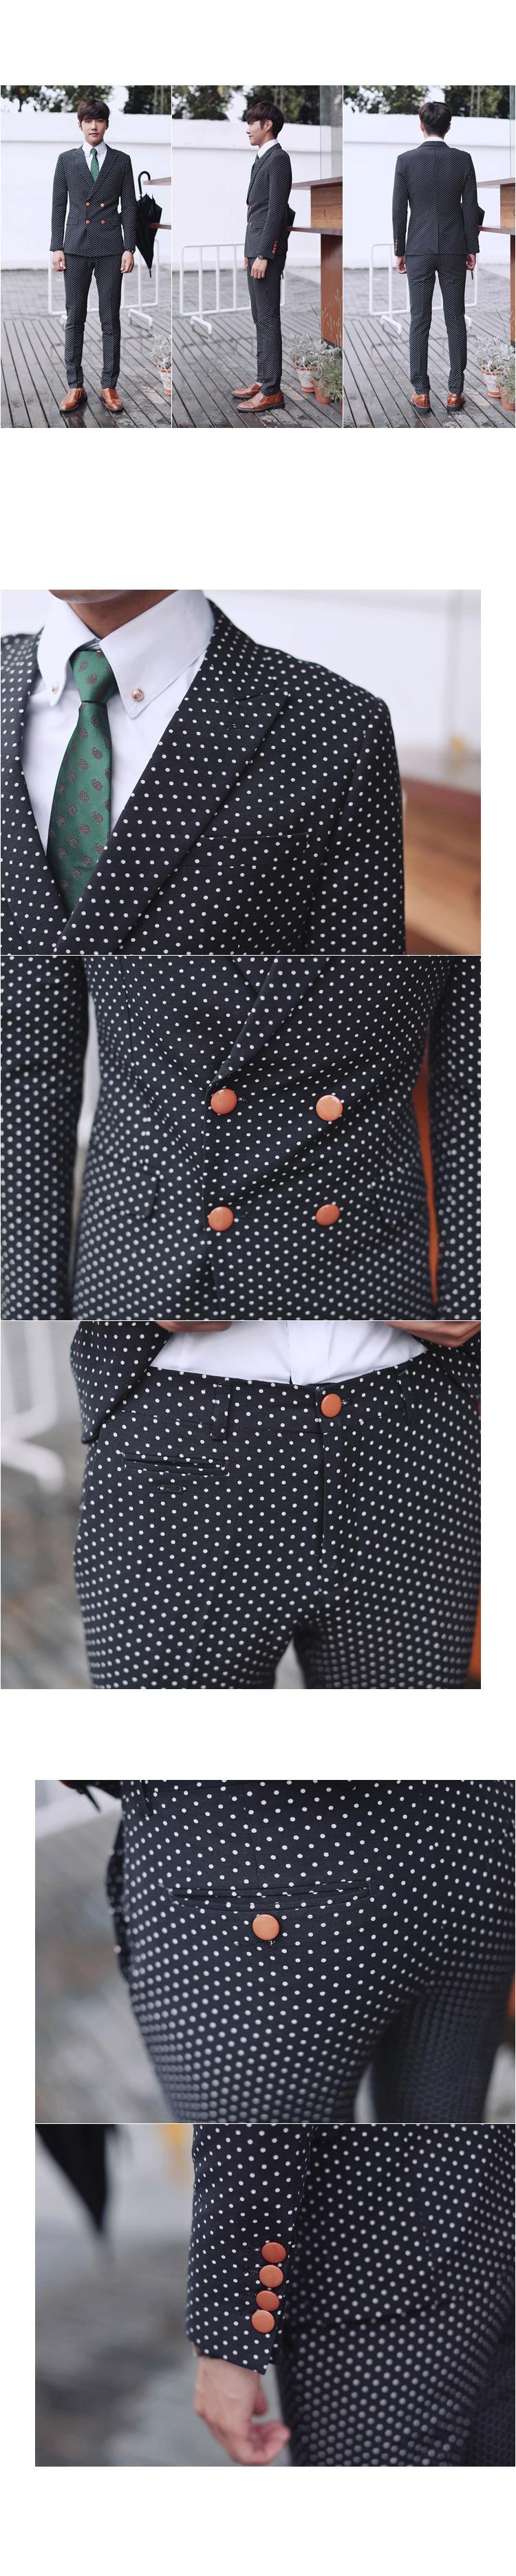 2014英伦双排扣男士韩版修身西装套装 商务休闲西服套装XZ90